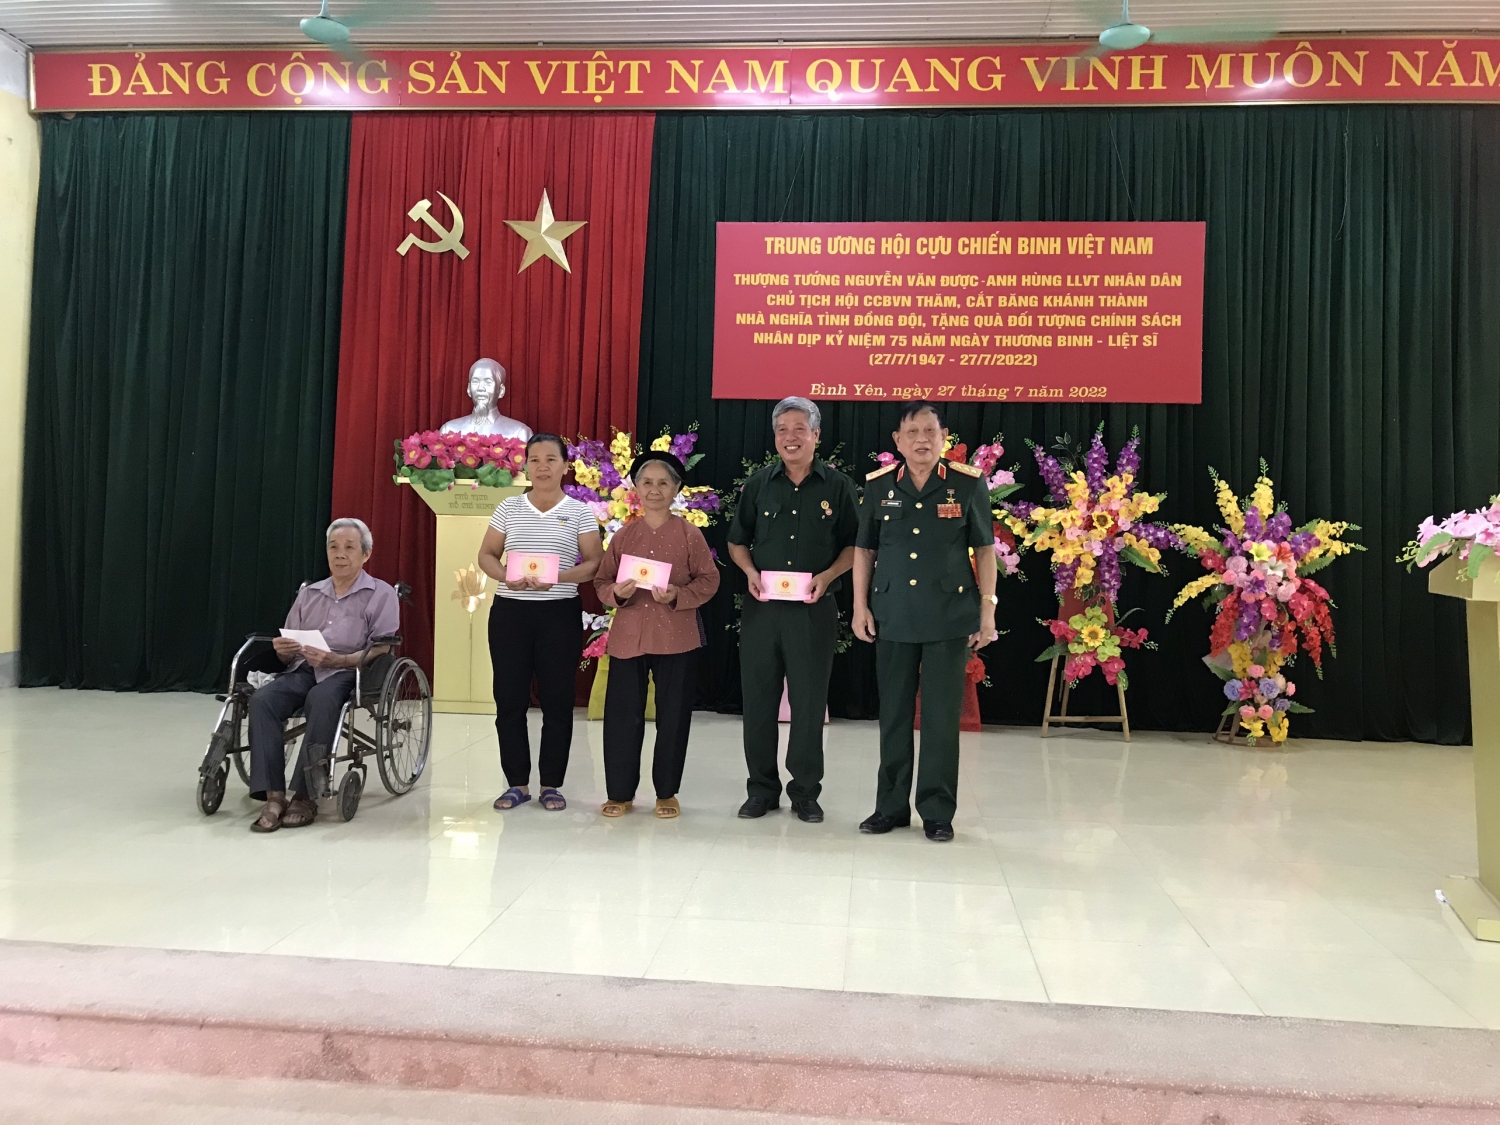 Hội CCB Việt Nam và Hội CCB Tập đoàn tặng quà đối tượng chính sách và khánh thành nhà nghĩa tình đồng đội tại tỉnh Tuyên Quang”